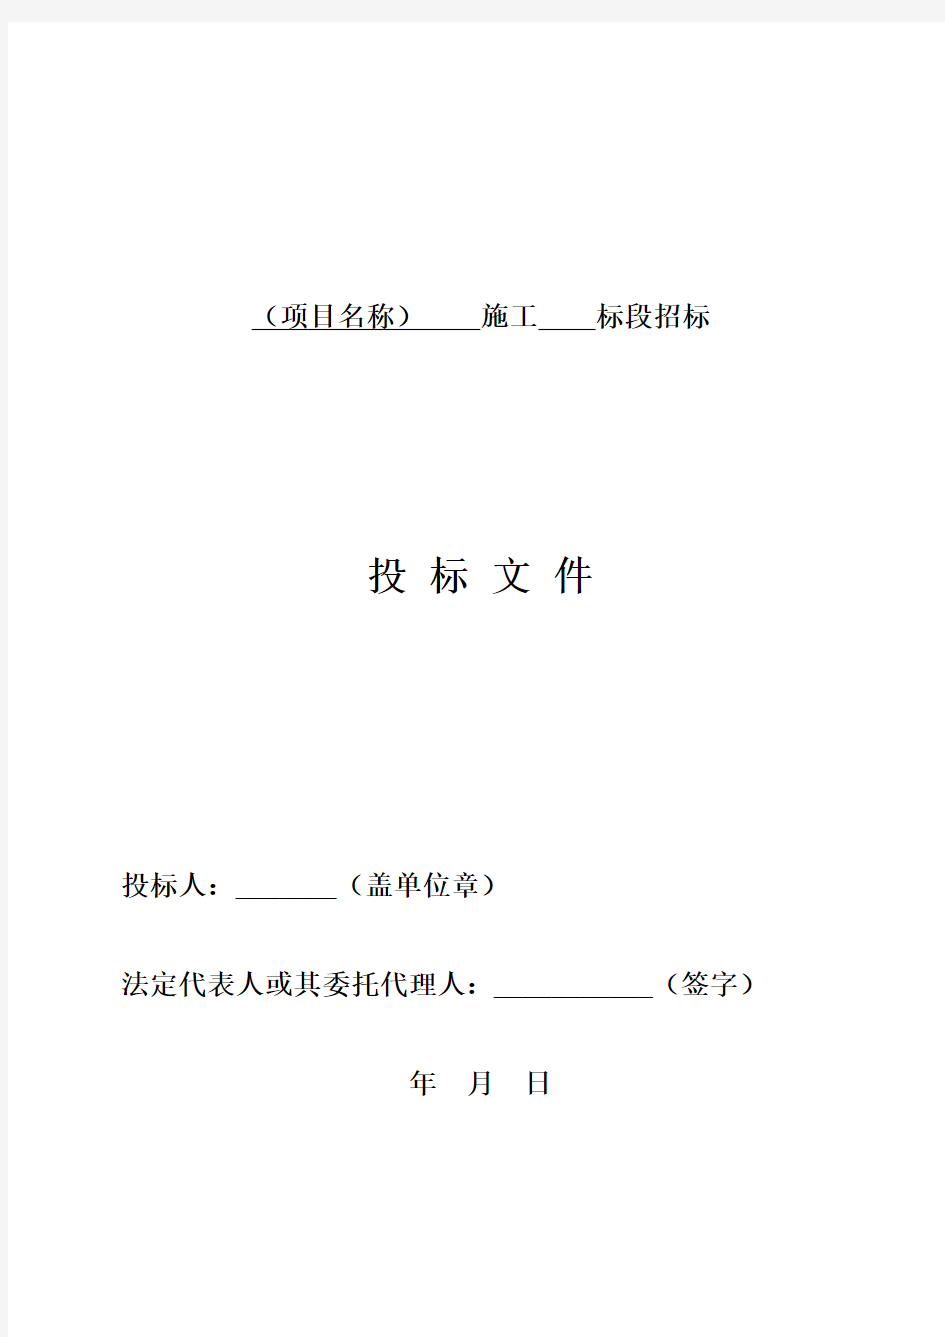 四川省房屋建筑和市政工程标准施工招标文件范本 (2020版)